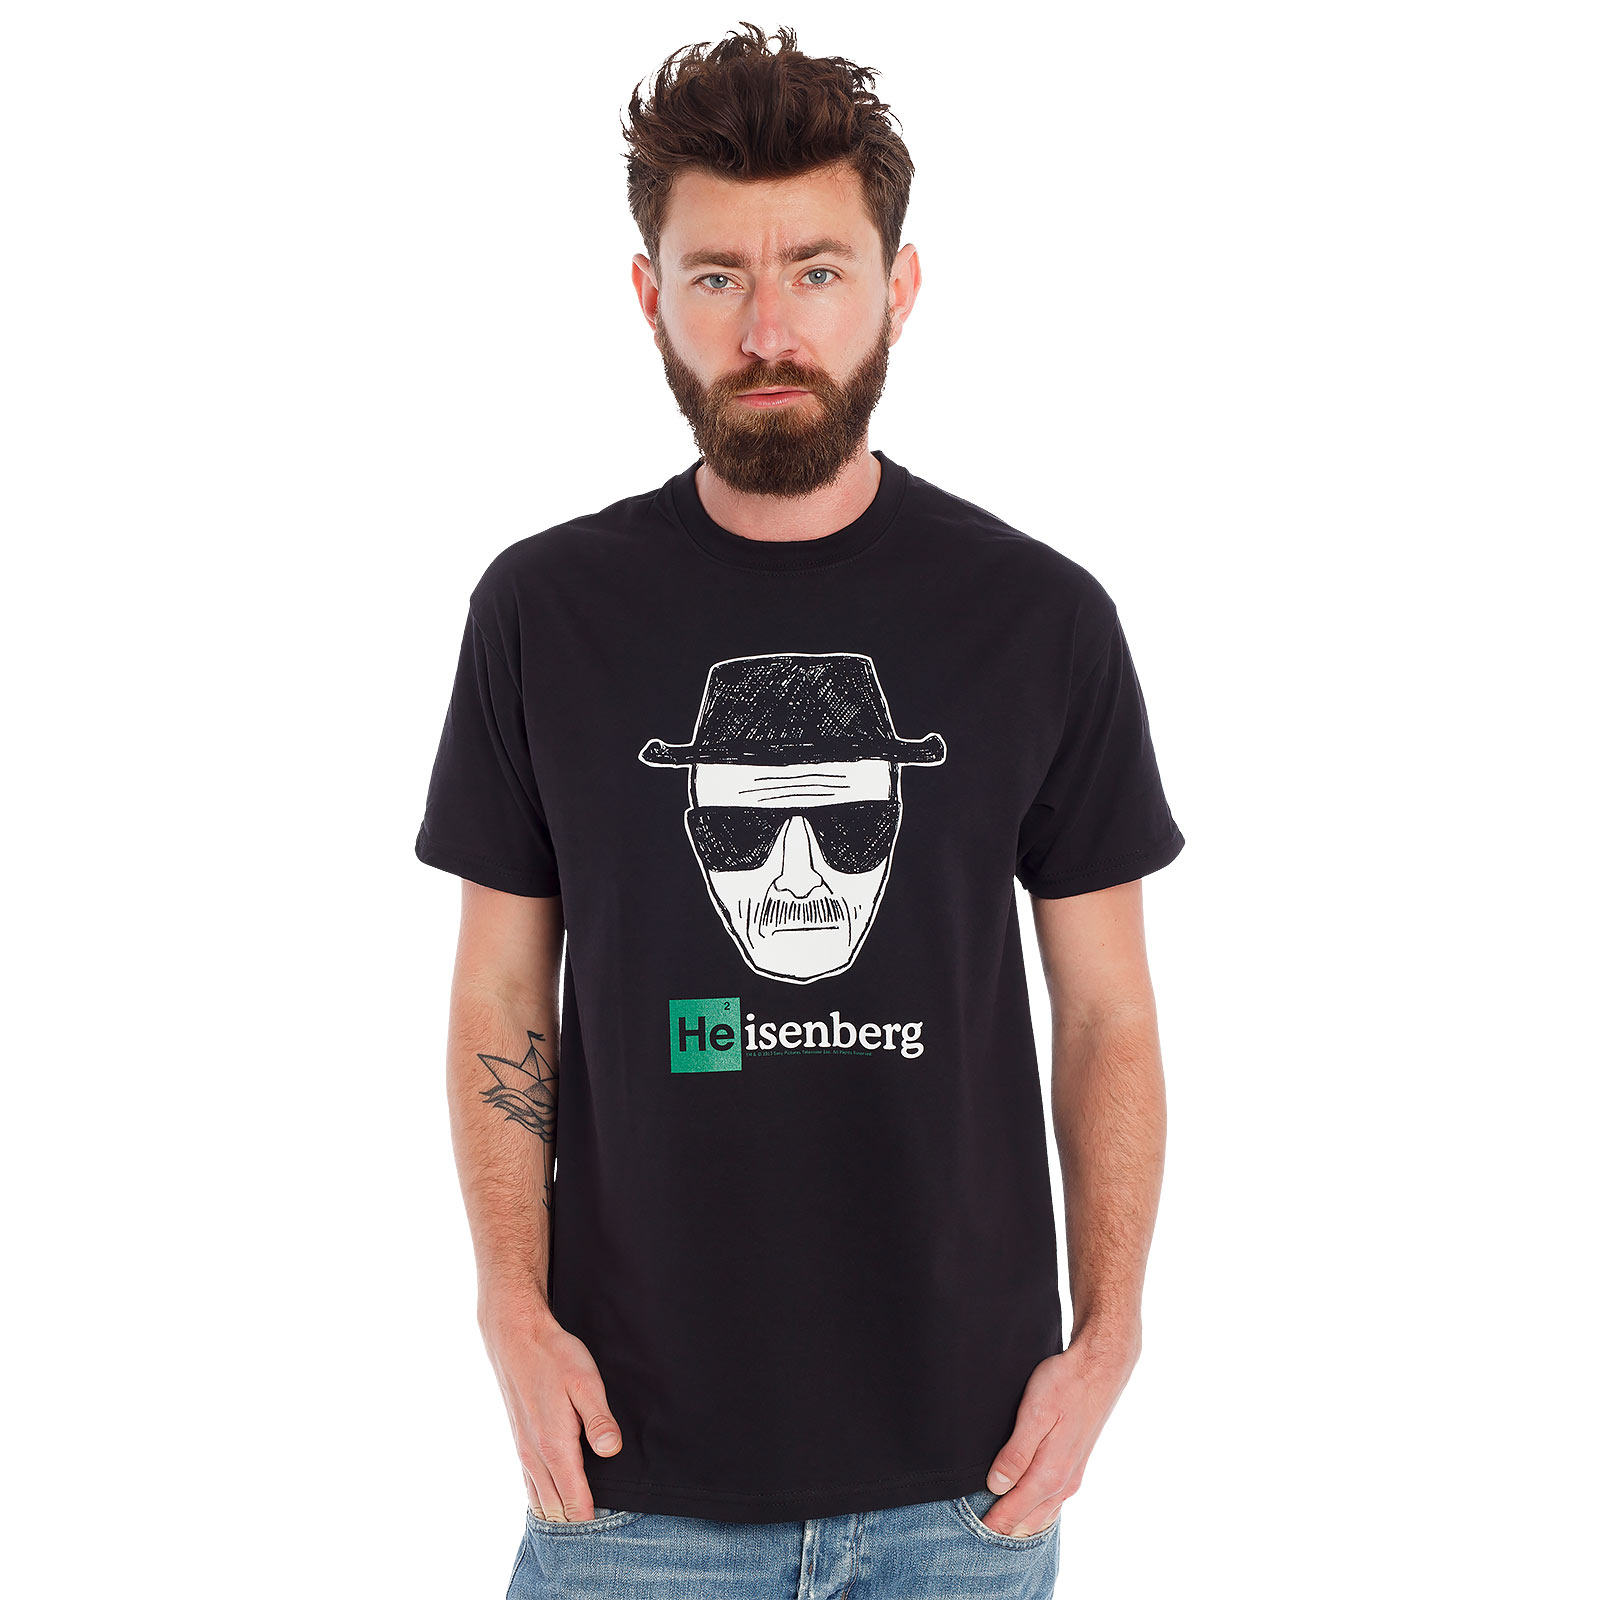 Breaking Bad - Gezocht: Heisenberg T-Shirt